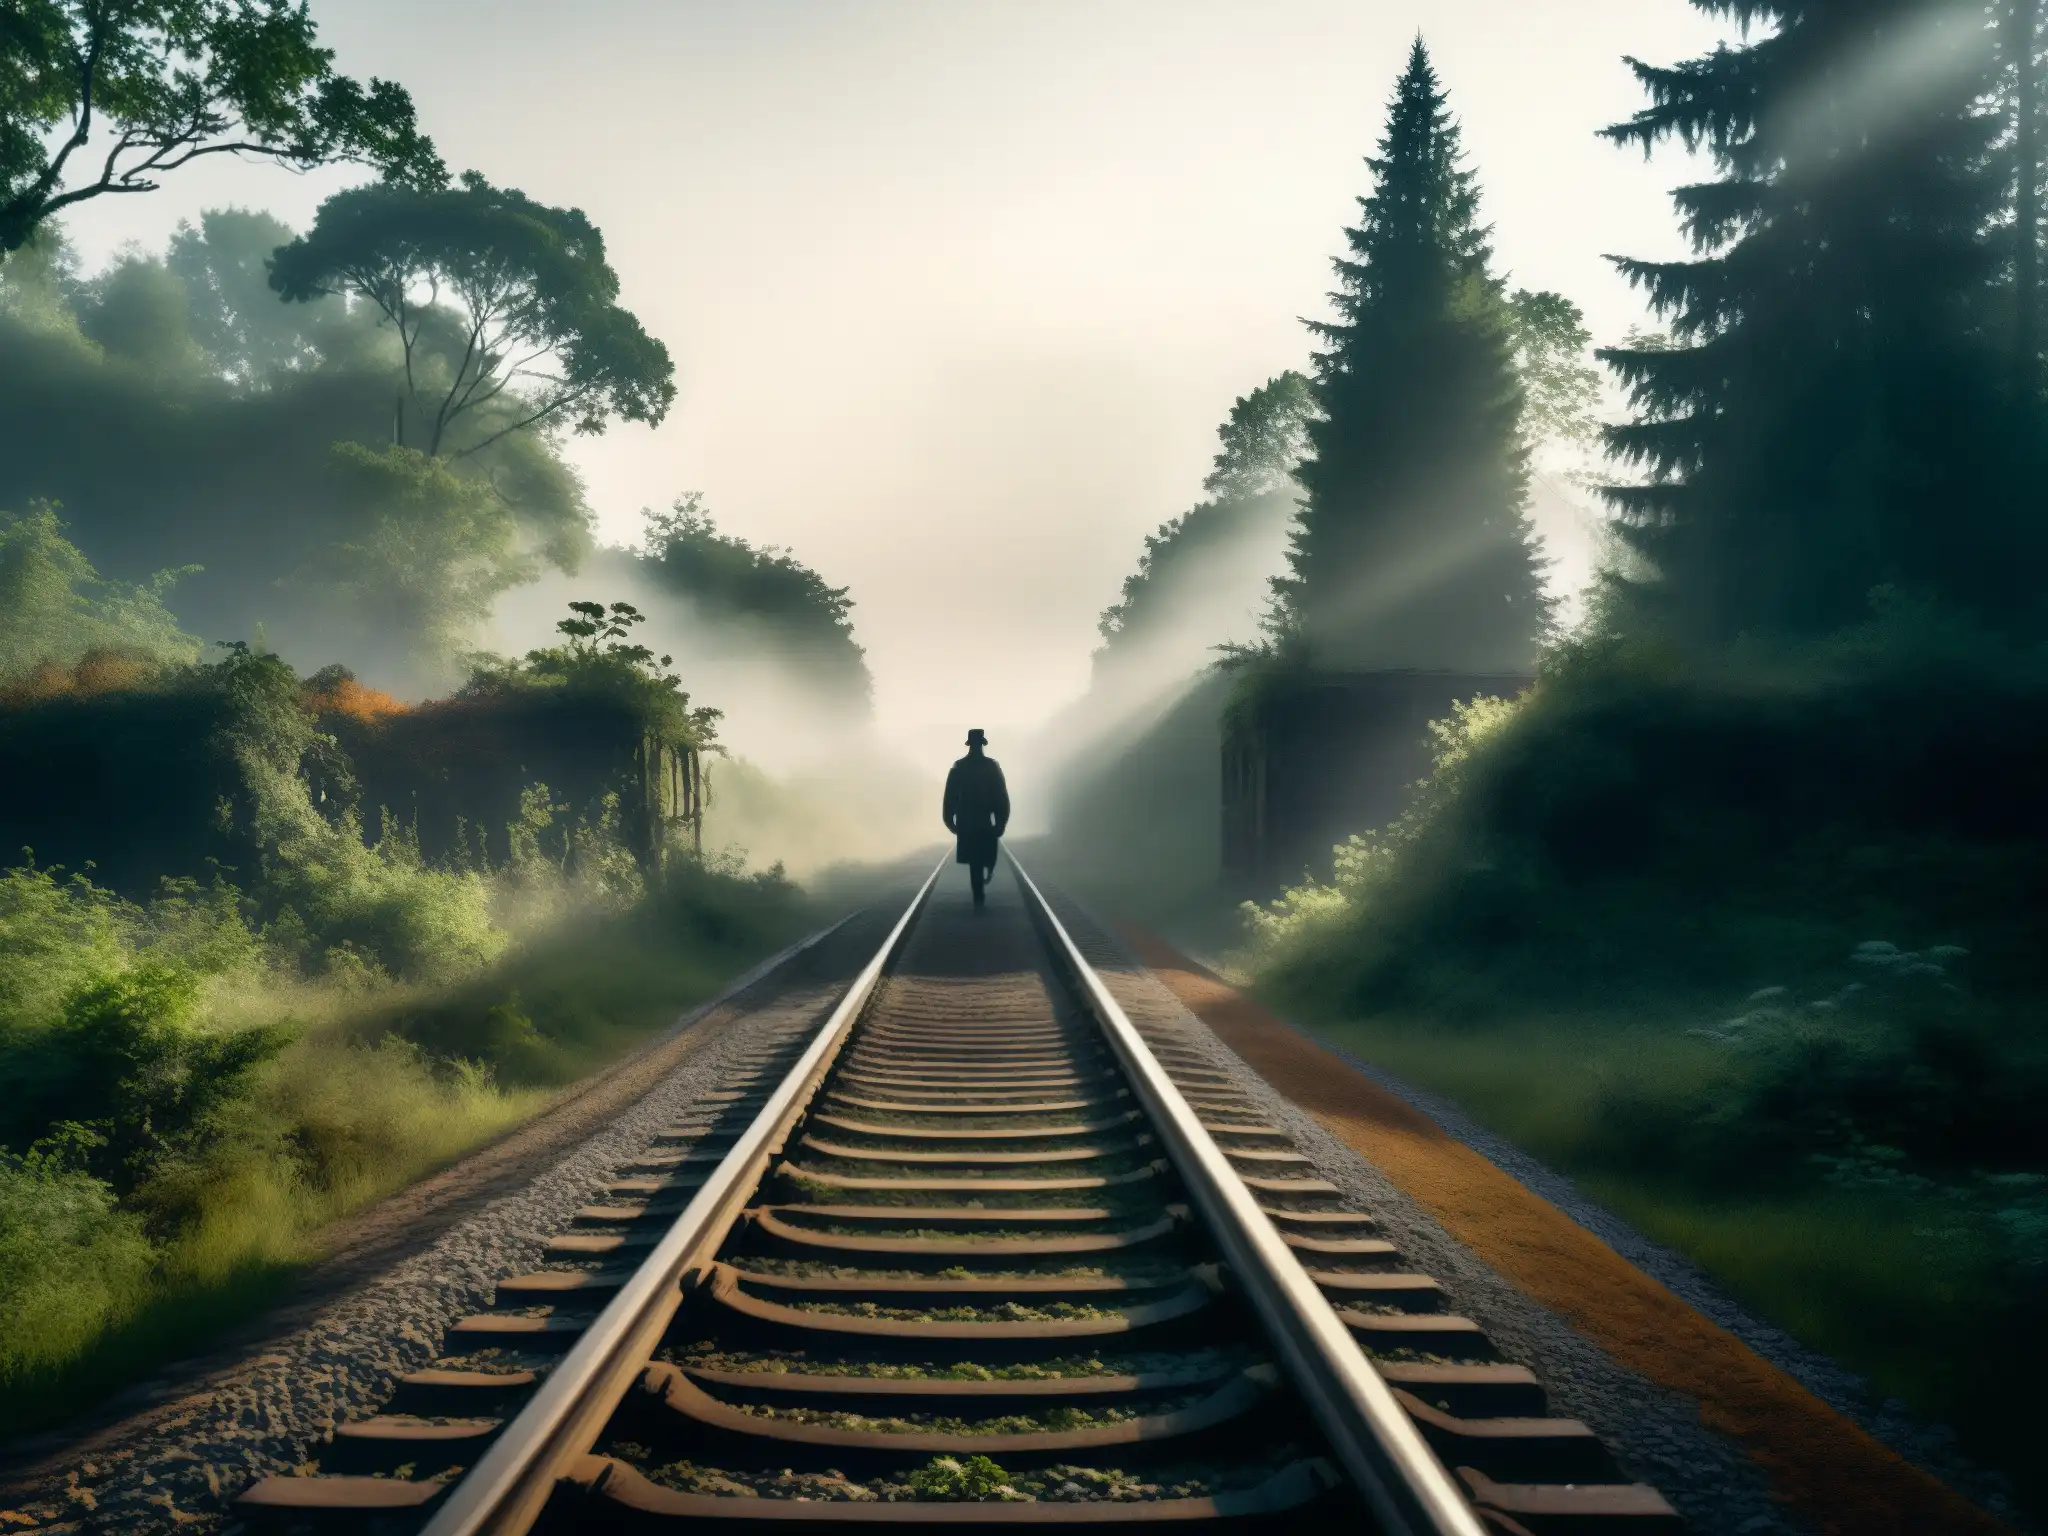 Un misterioso tren fantasma Bishan mito realidad en la niebla del bosque abandonado